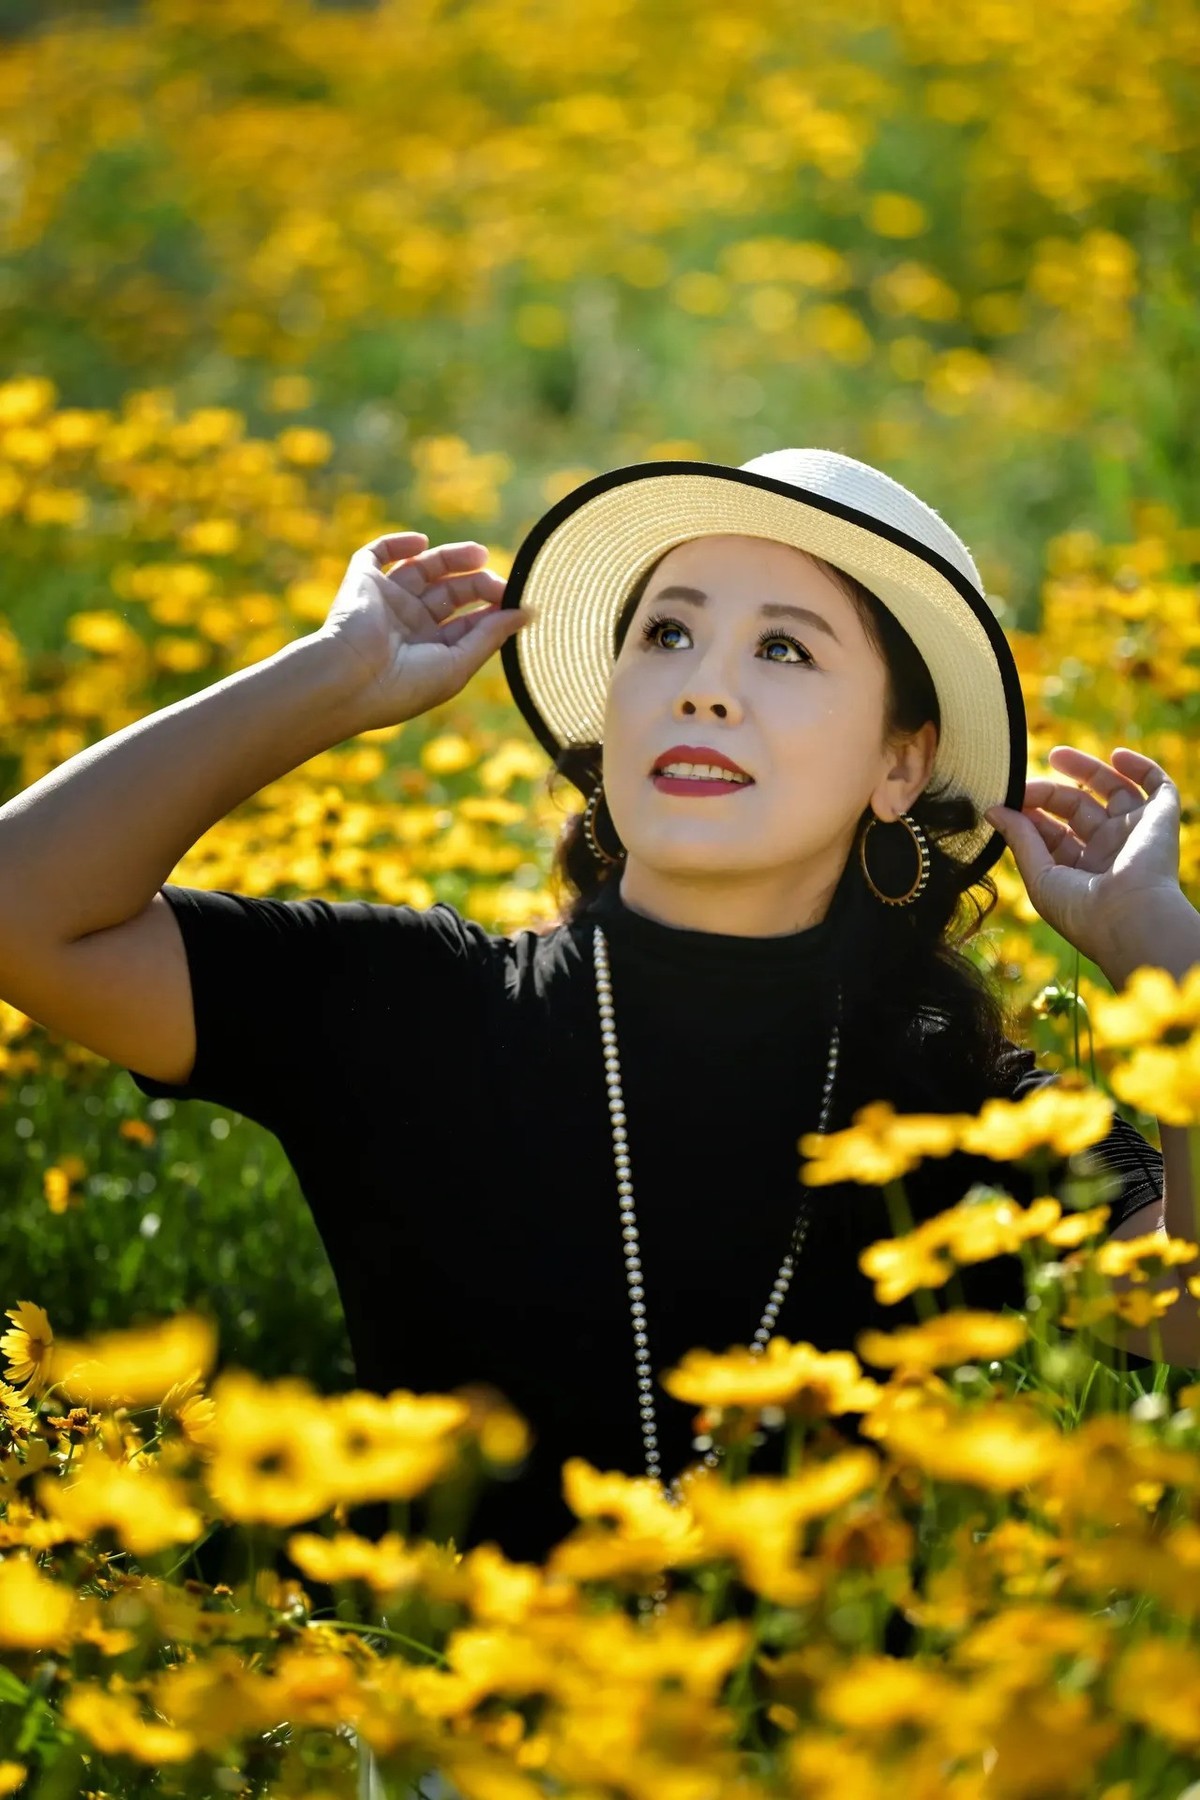 在花丛中拿着草帽微笑的女人 - 免费可商用图片 - cc0.cn